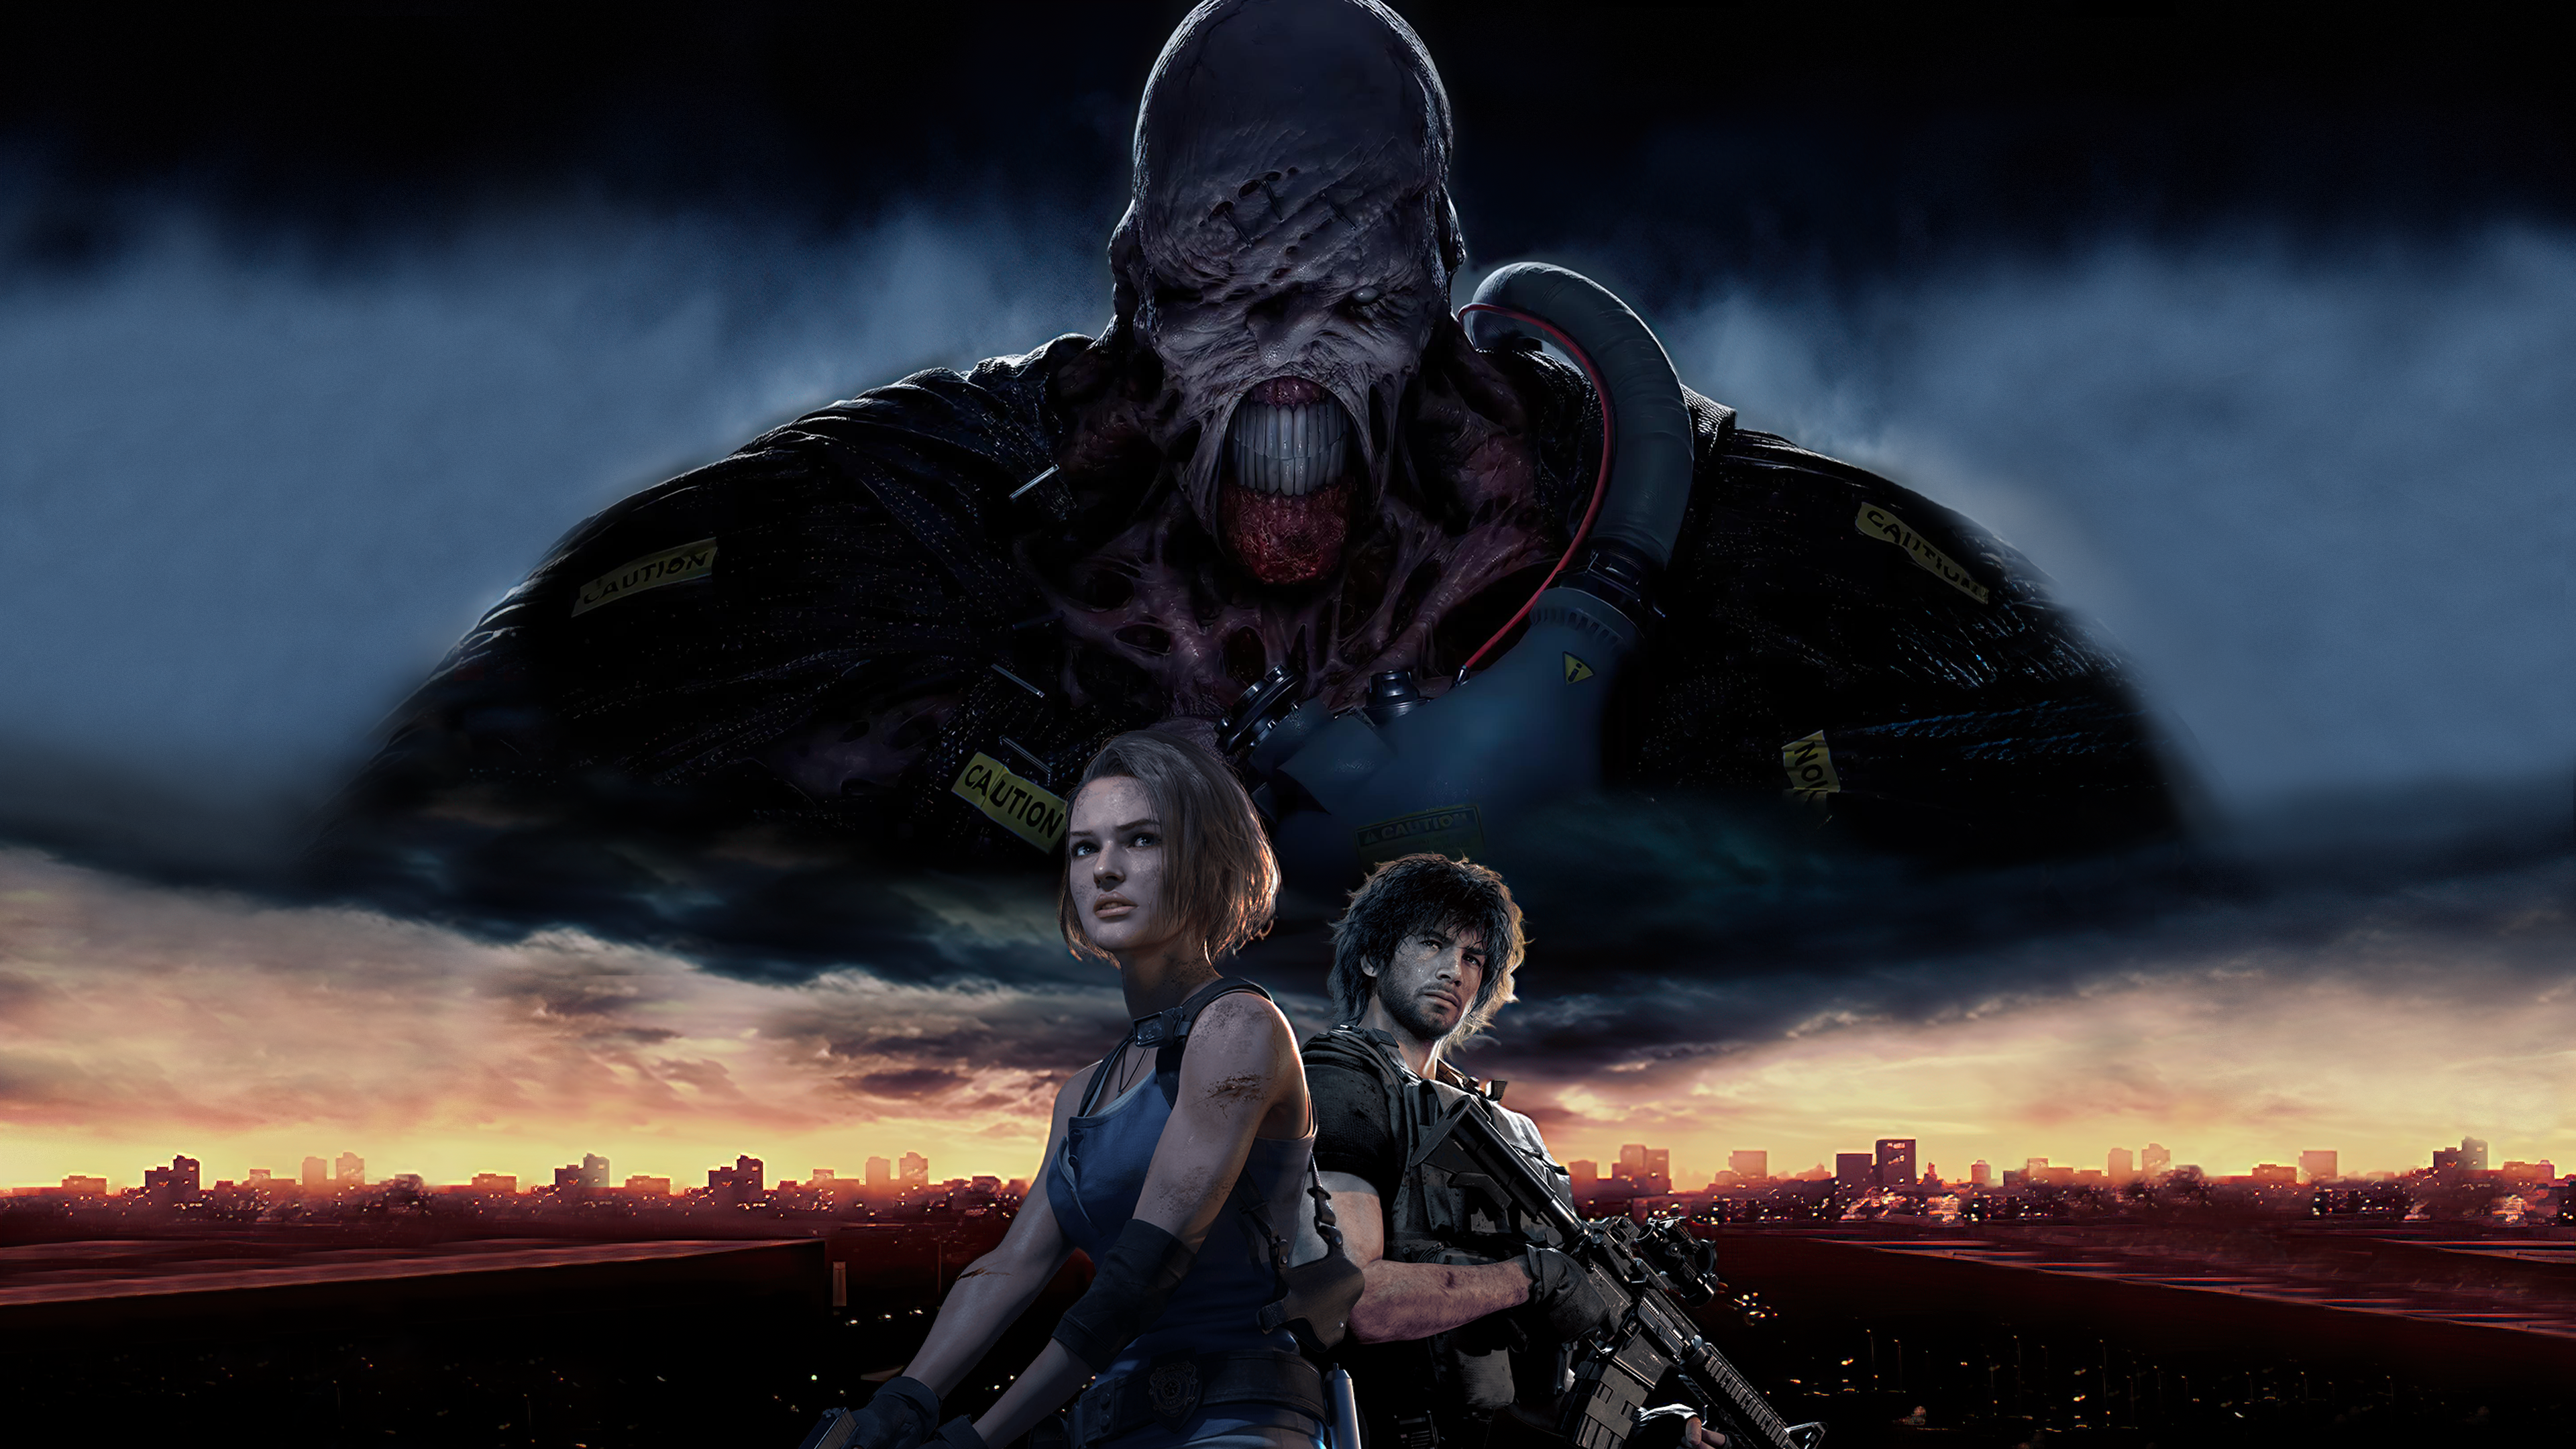 Resident Evil 3 Wallpaper 4K (3840x2160). I created it using